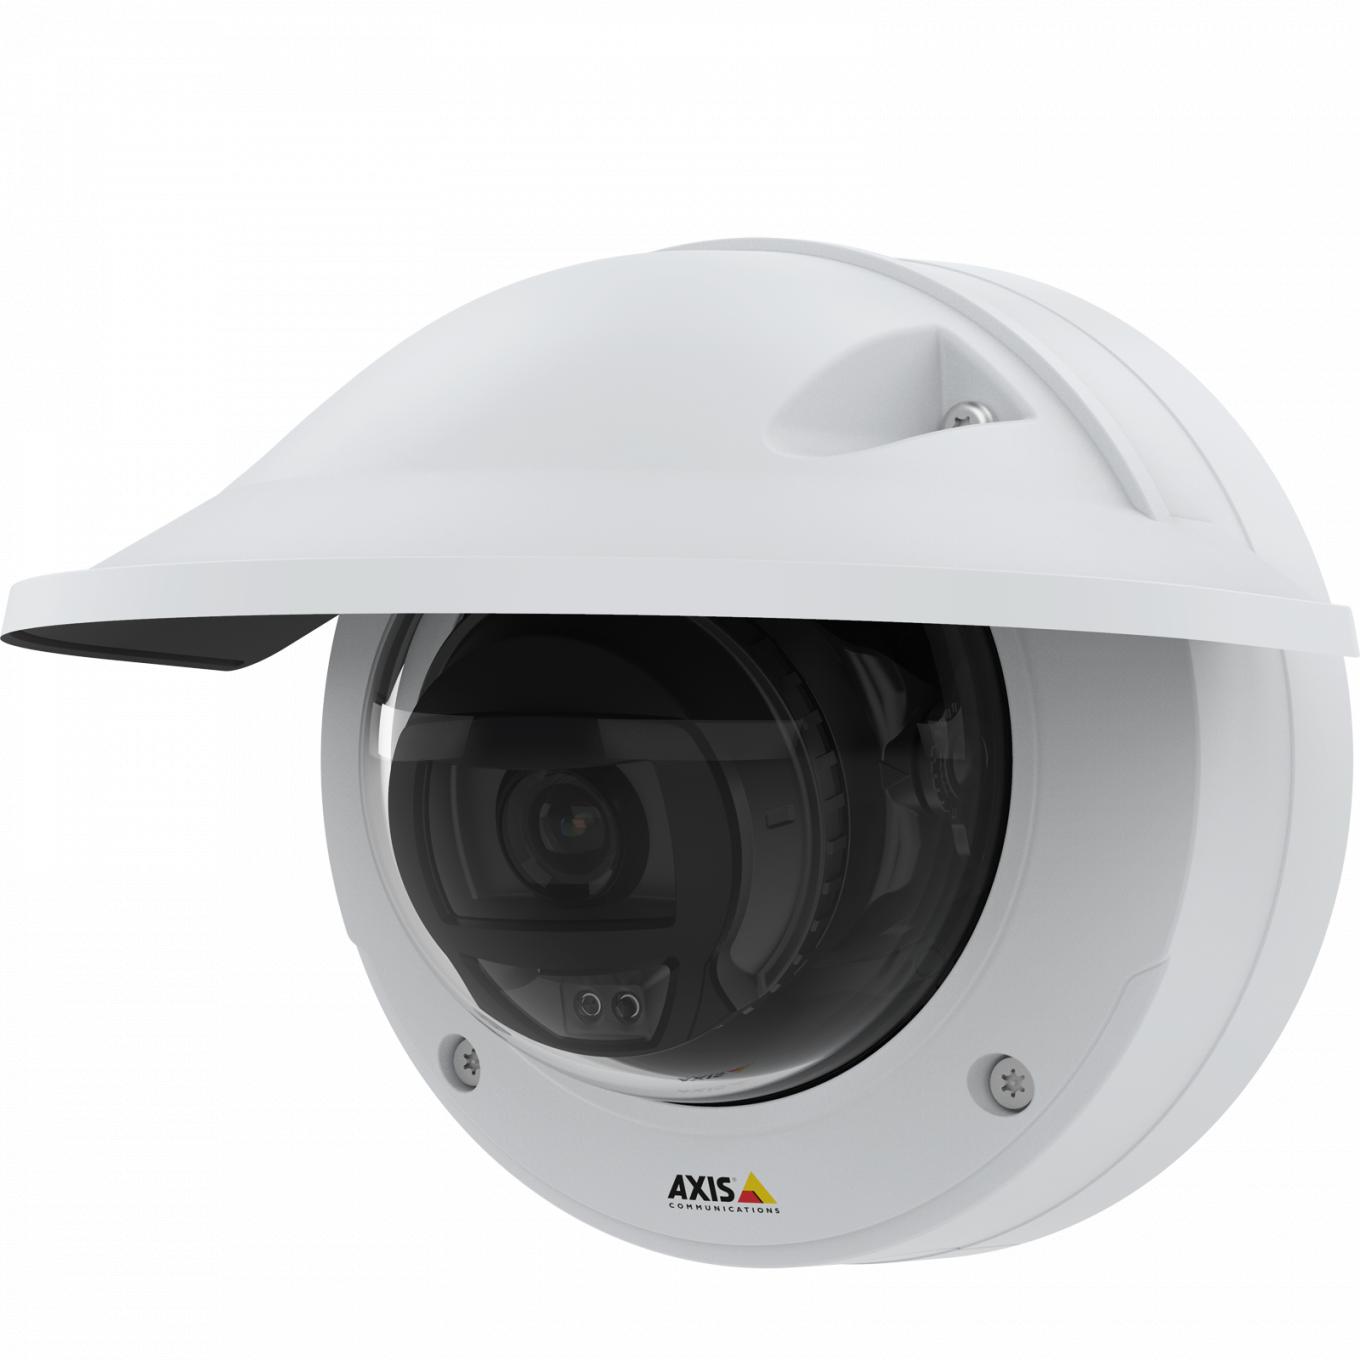 A câmera IP AXIS P3245 LVE oferece qualidade de vídeo HDTV 1080p. A câmera vista pela esquerda com proteção climática.